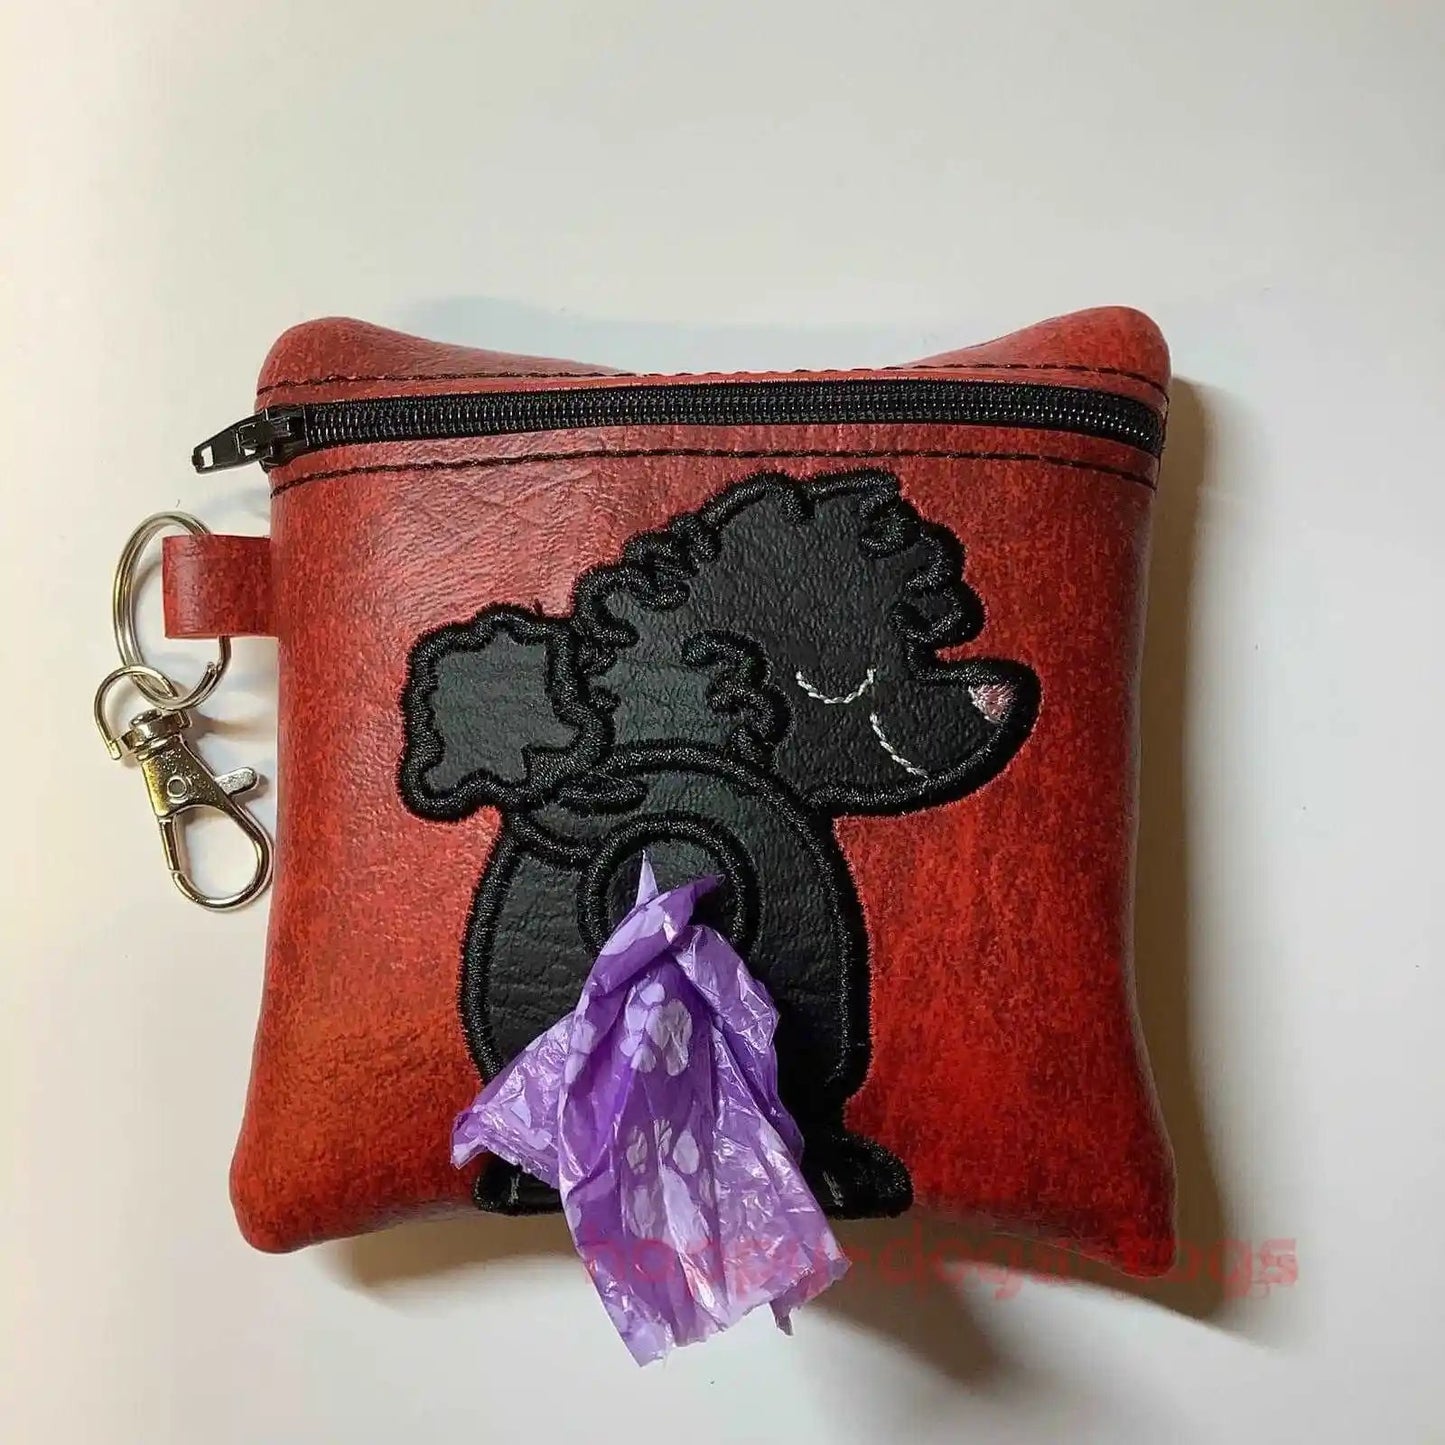 Black Poodle on Red Embroidered poo bag dispenser